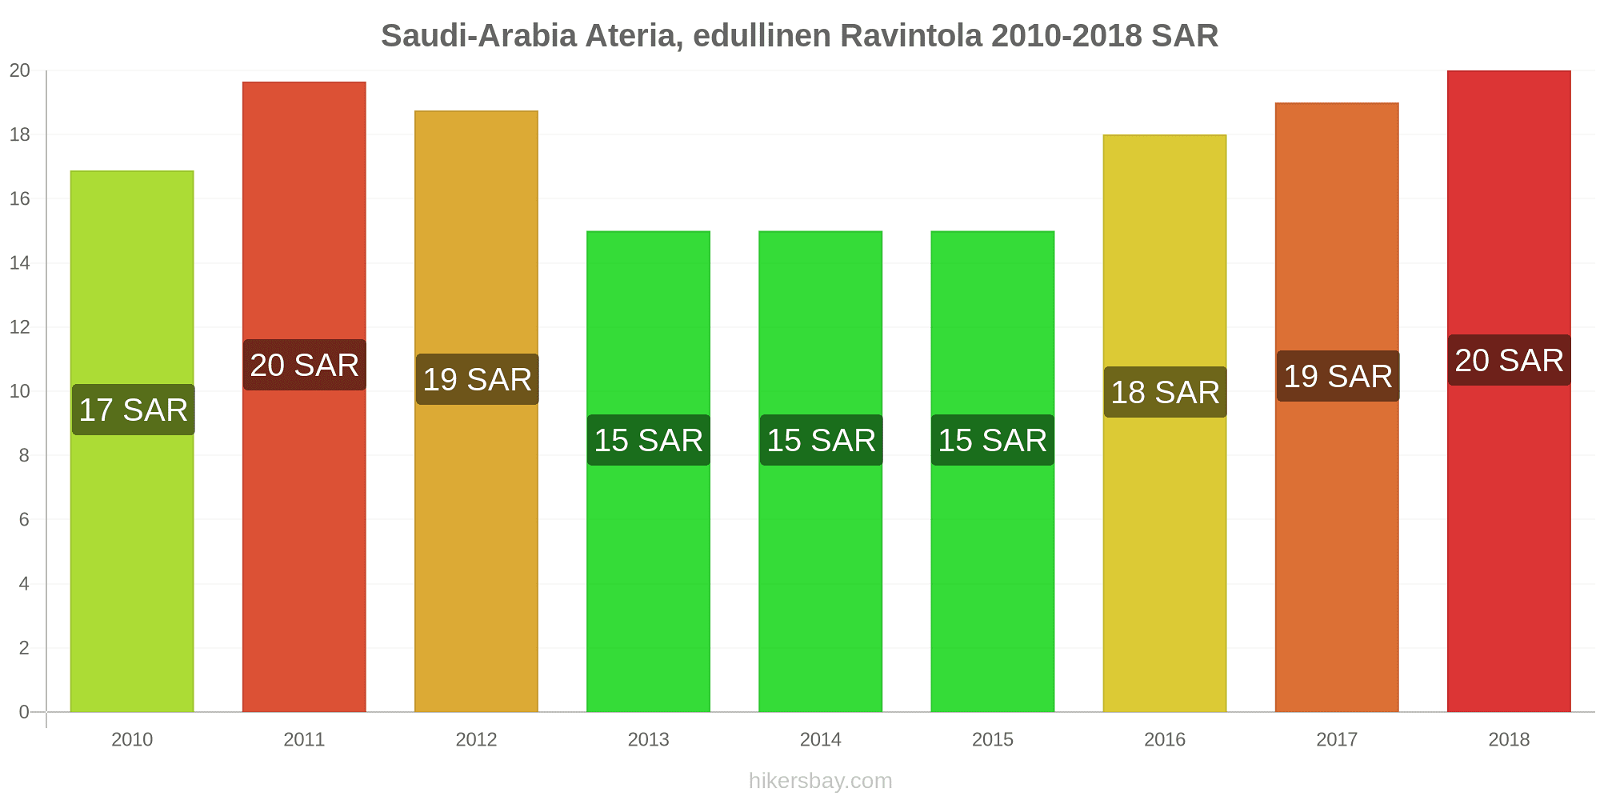 Saudi-Arabia hintojen muutokset Ateria, edullinen Ravintola hikersbay.com